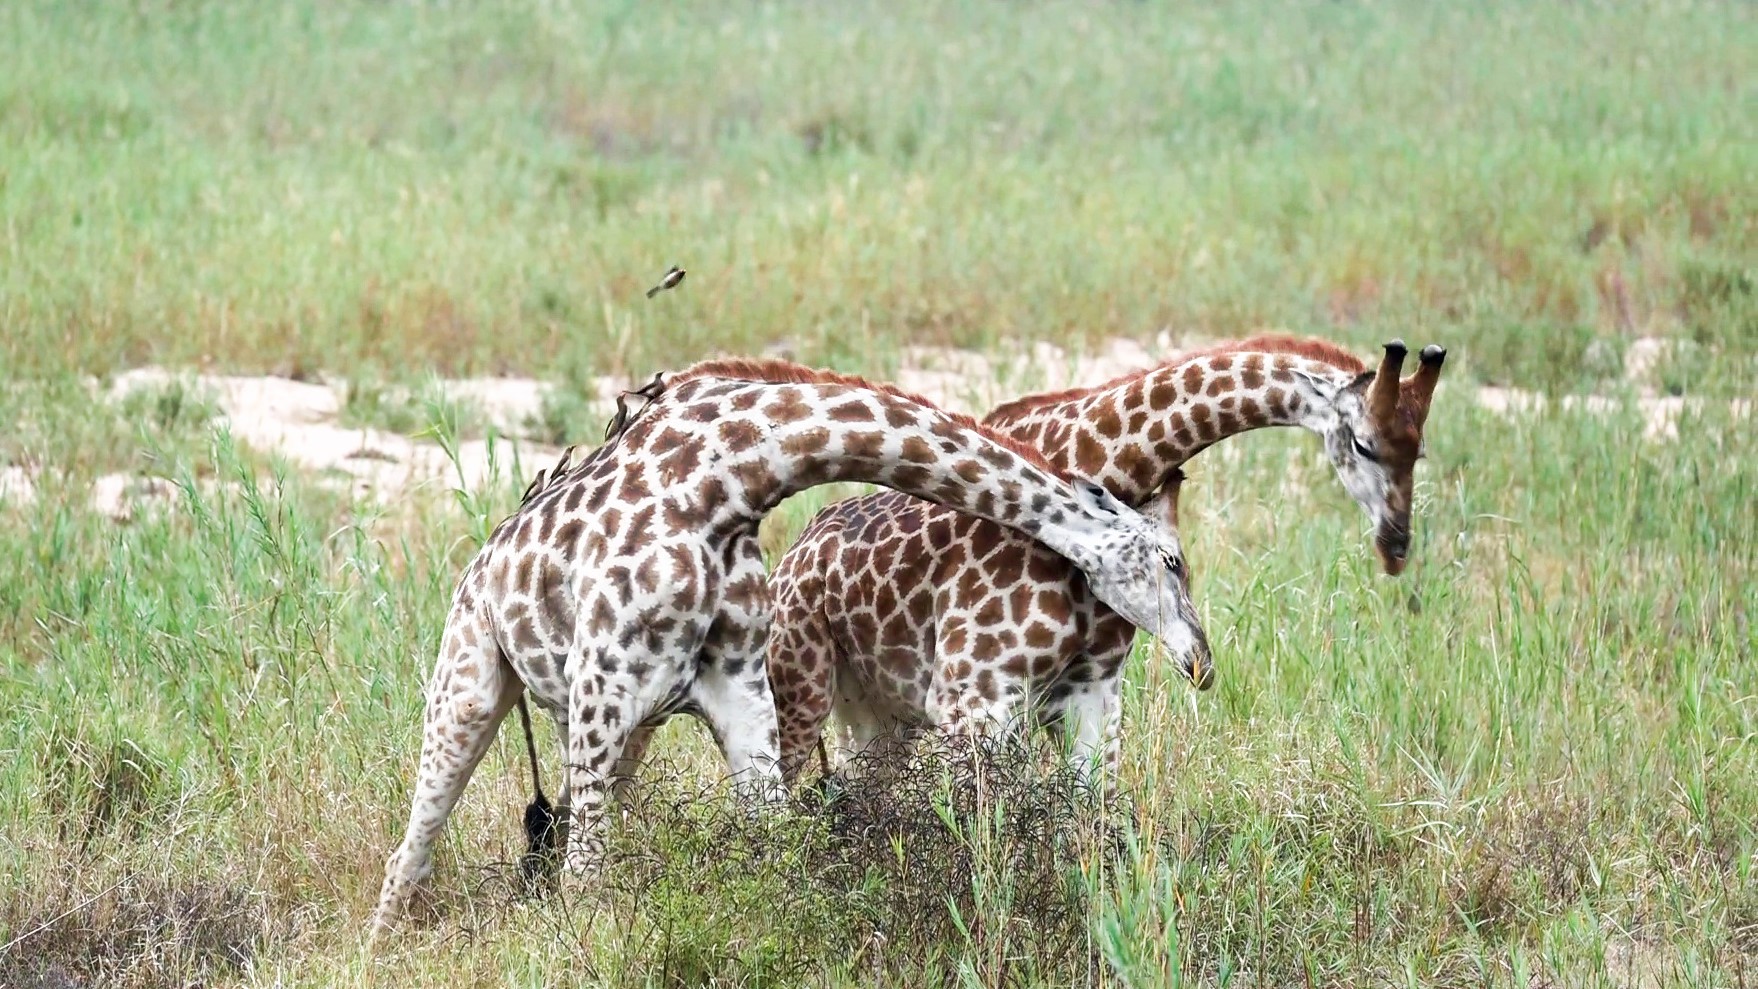 Giraffes Necking